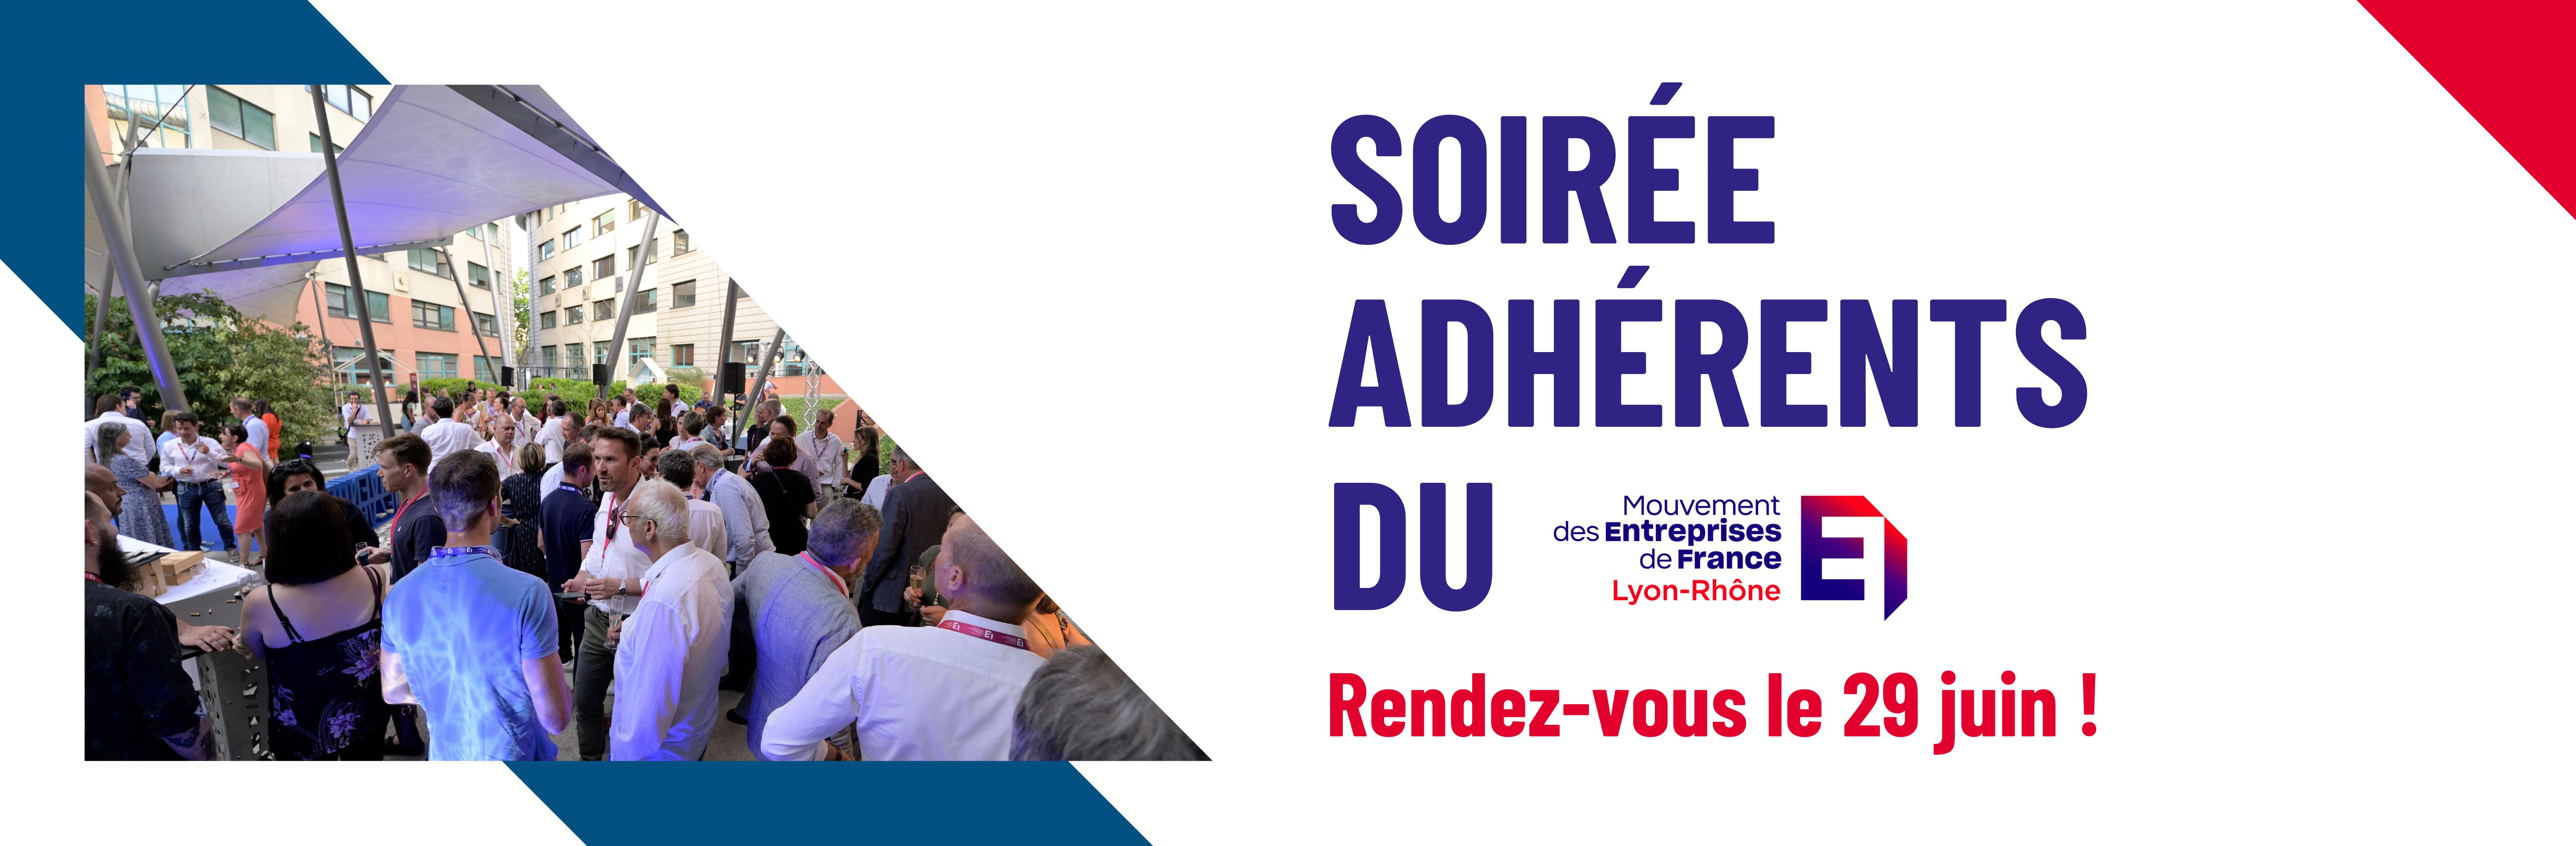 Soirée Adhérent du MEDEF Lyon-Rhône